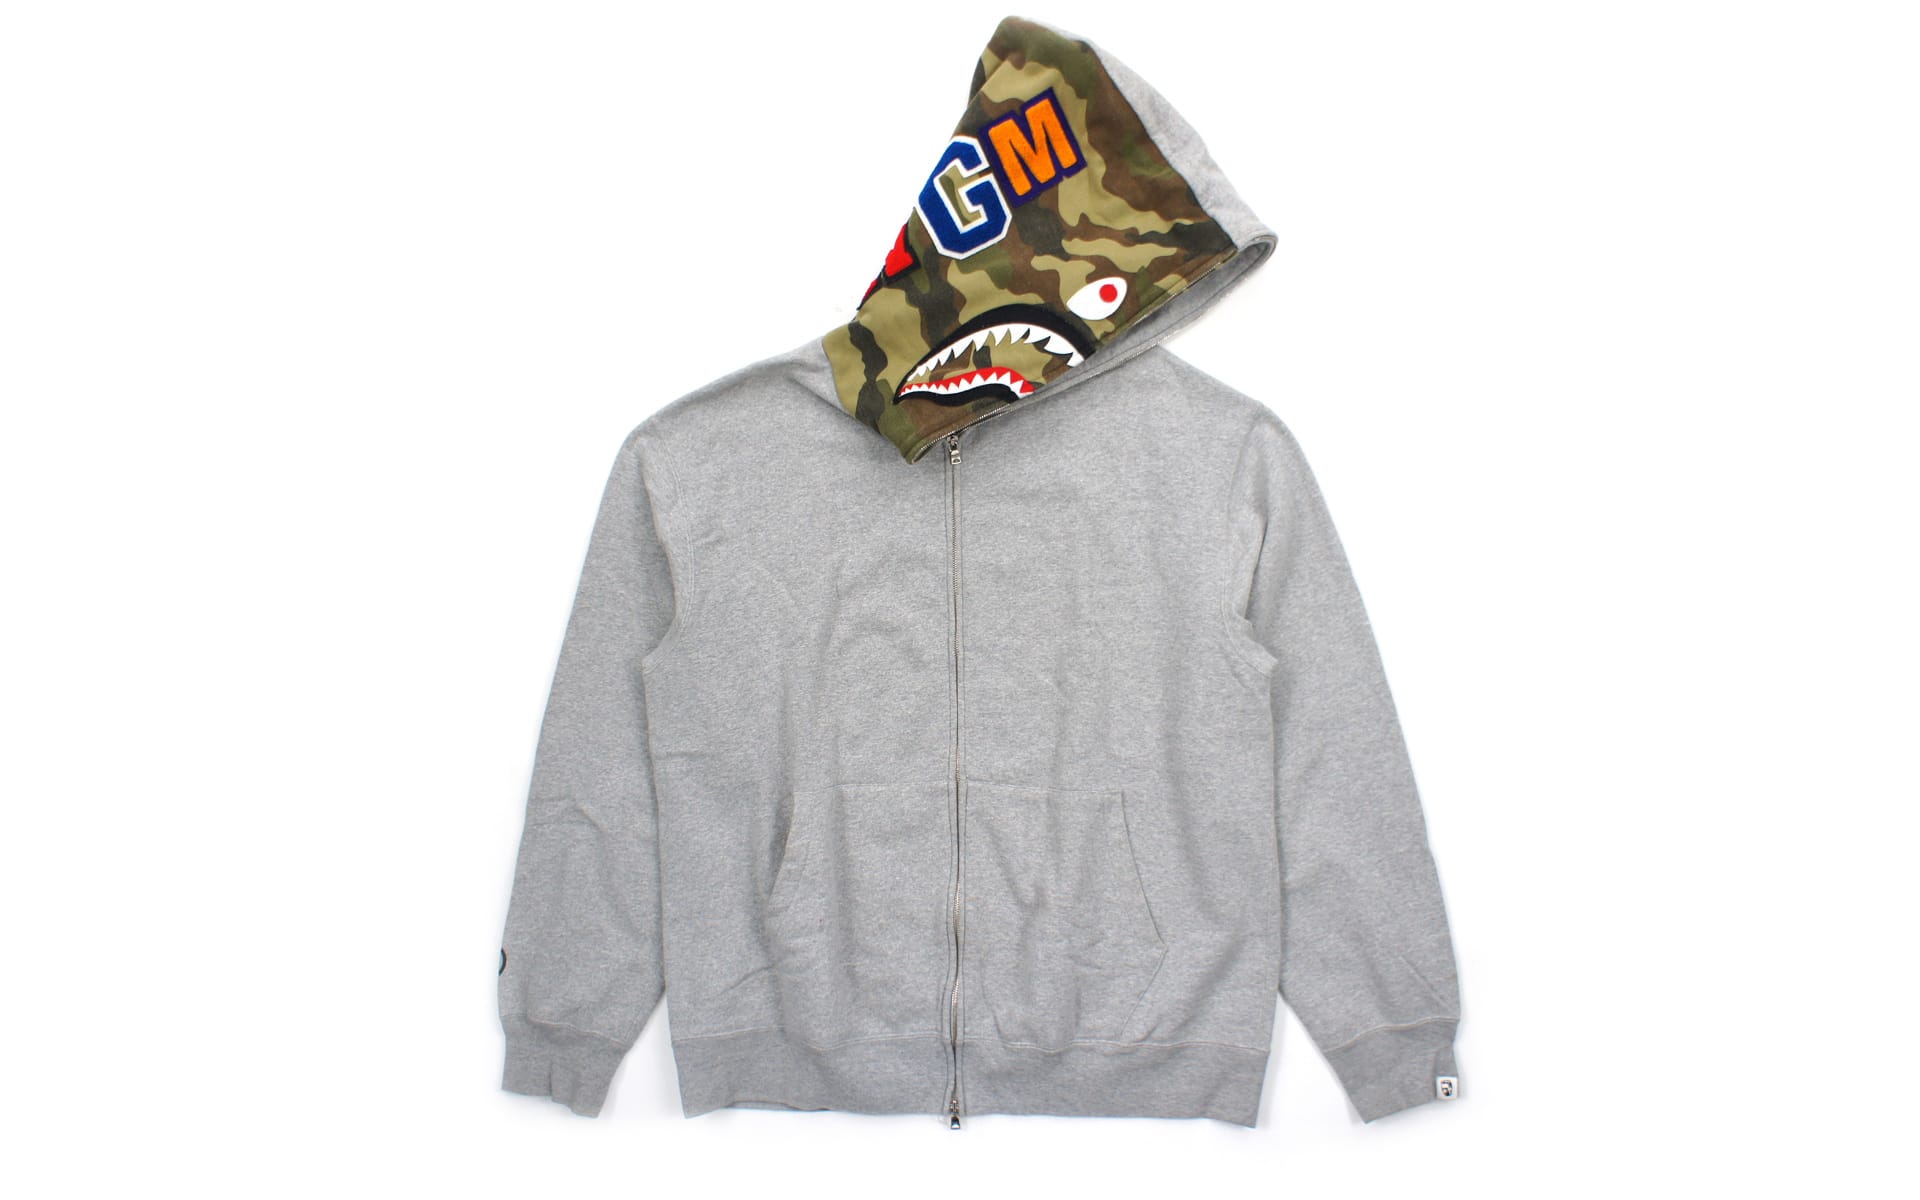 To Spot Real Vs Fake Bape Shark Hoodie all bape hoodies